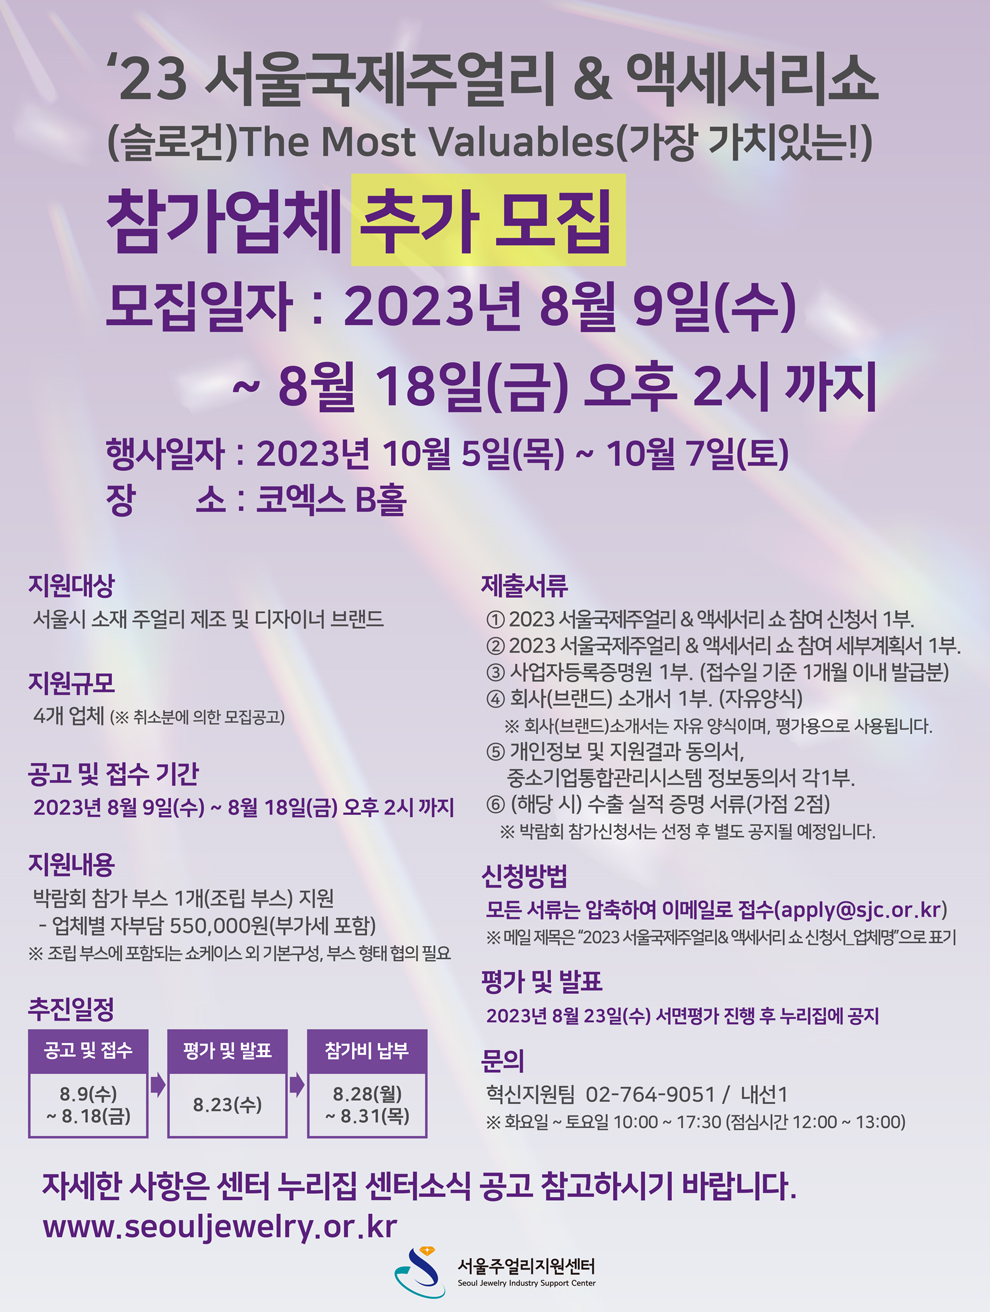 2023-서울국제주얼리&액세서리쇼-추가-모집공고-포스터_센터-홈페이지용.jpg